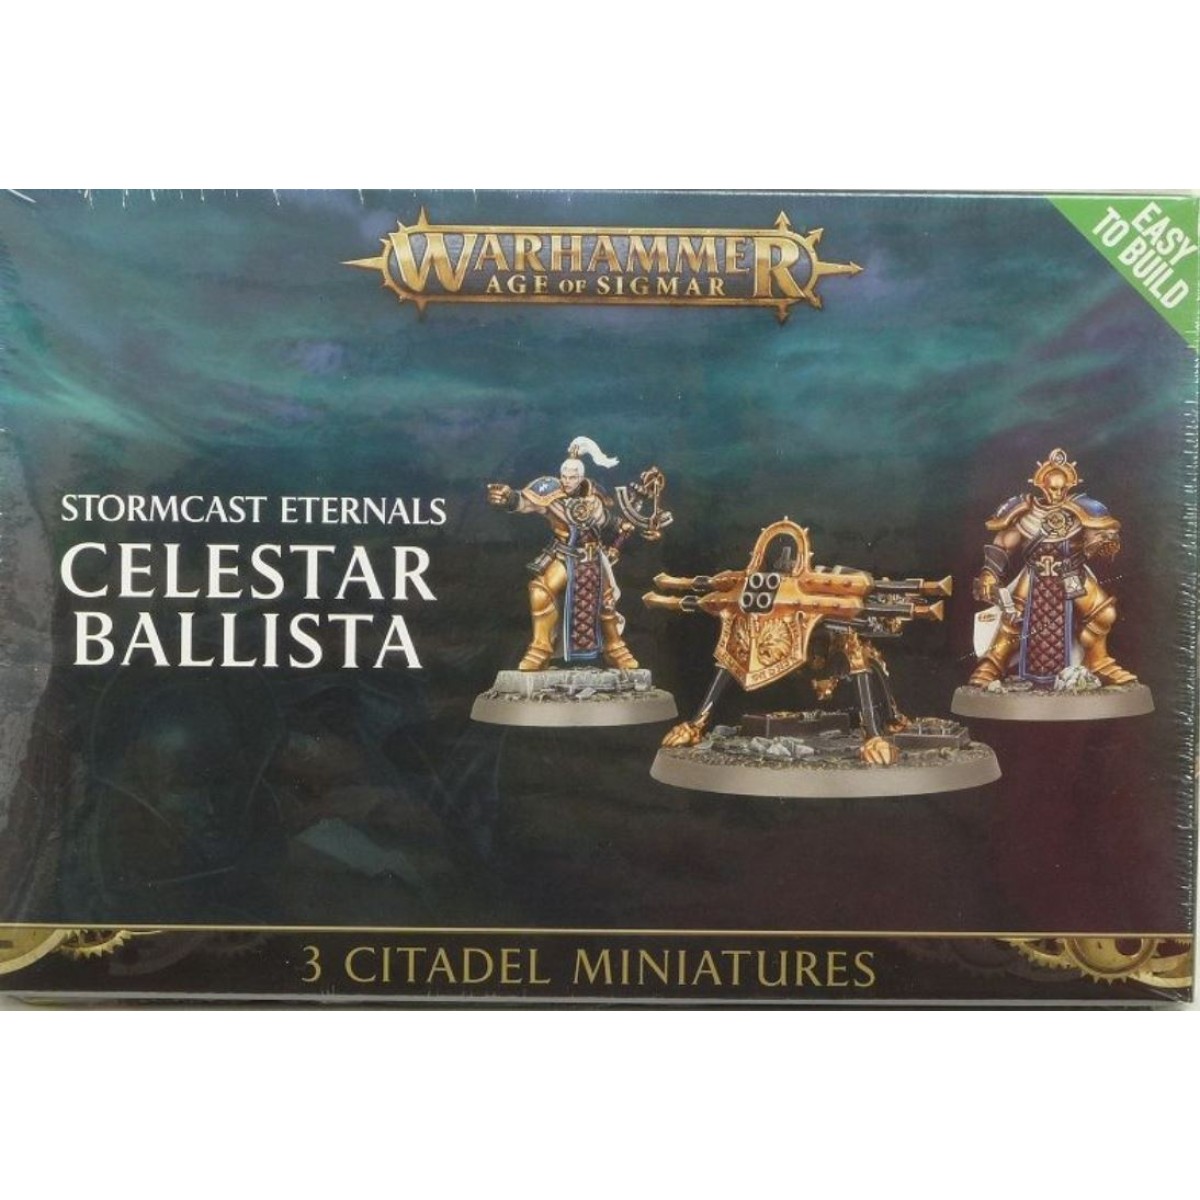 Celestar Ballista Warhammer Age of Sigmar Stormcast Eternals Easy to Build